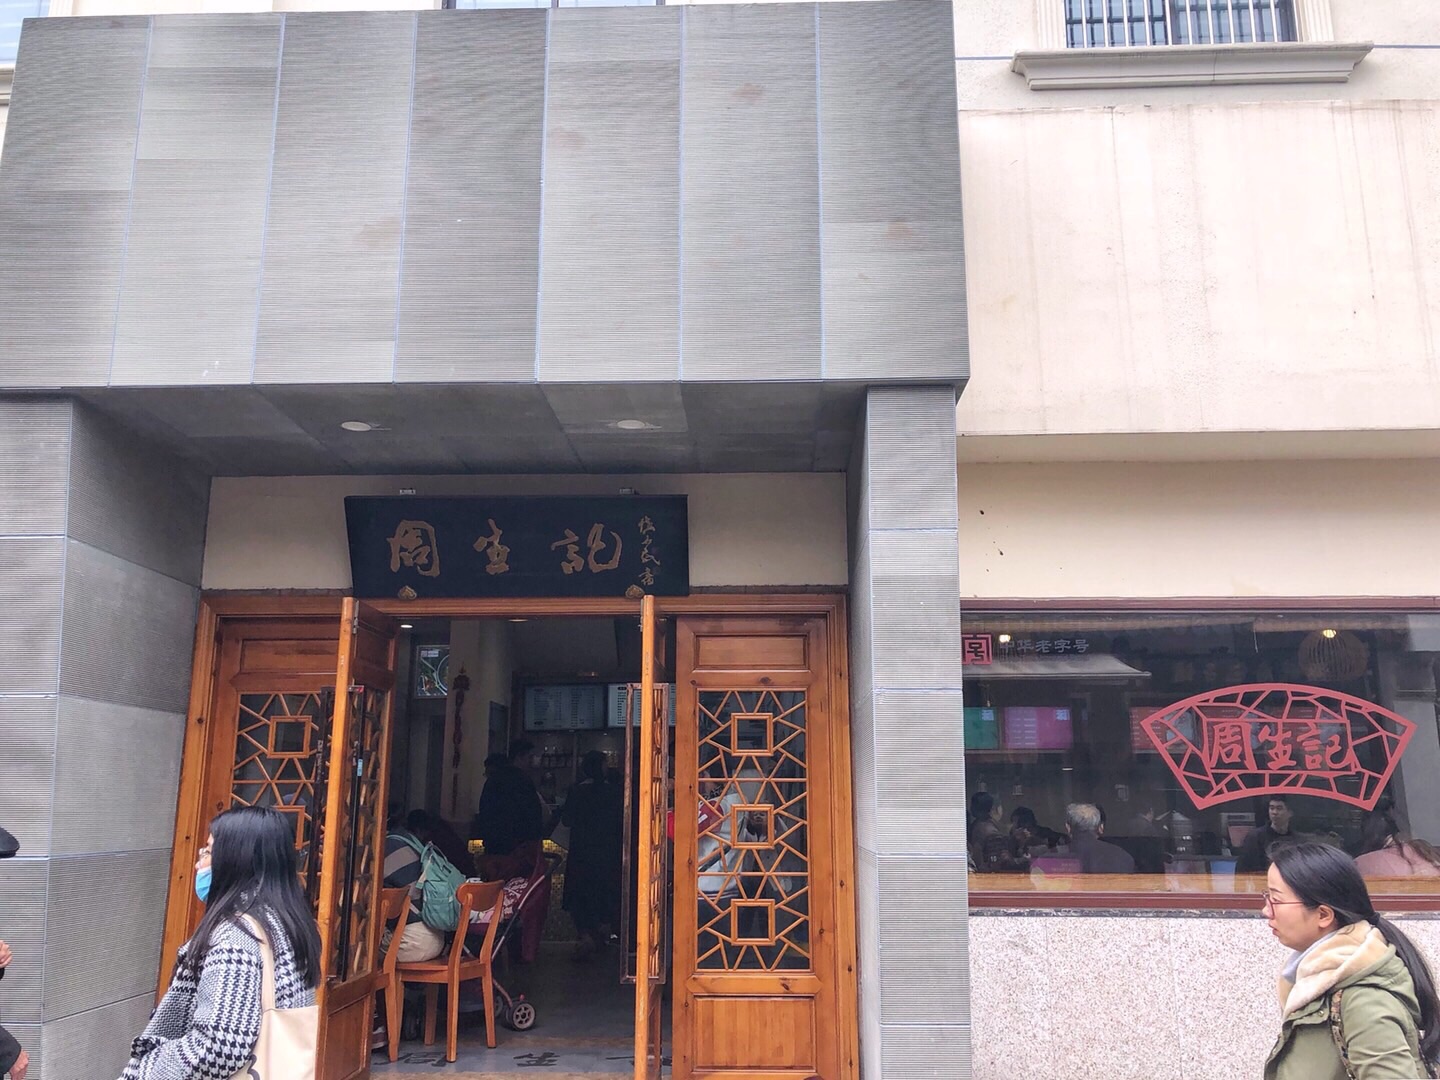 2023湘湖渔村(湘湖店)美食餐厅,...摆件和外面的湘湖景区的竹...【去哪儿攻略】